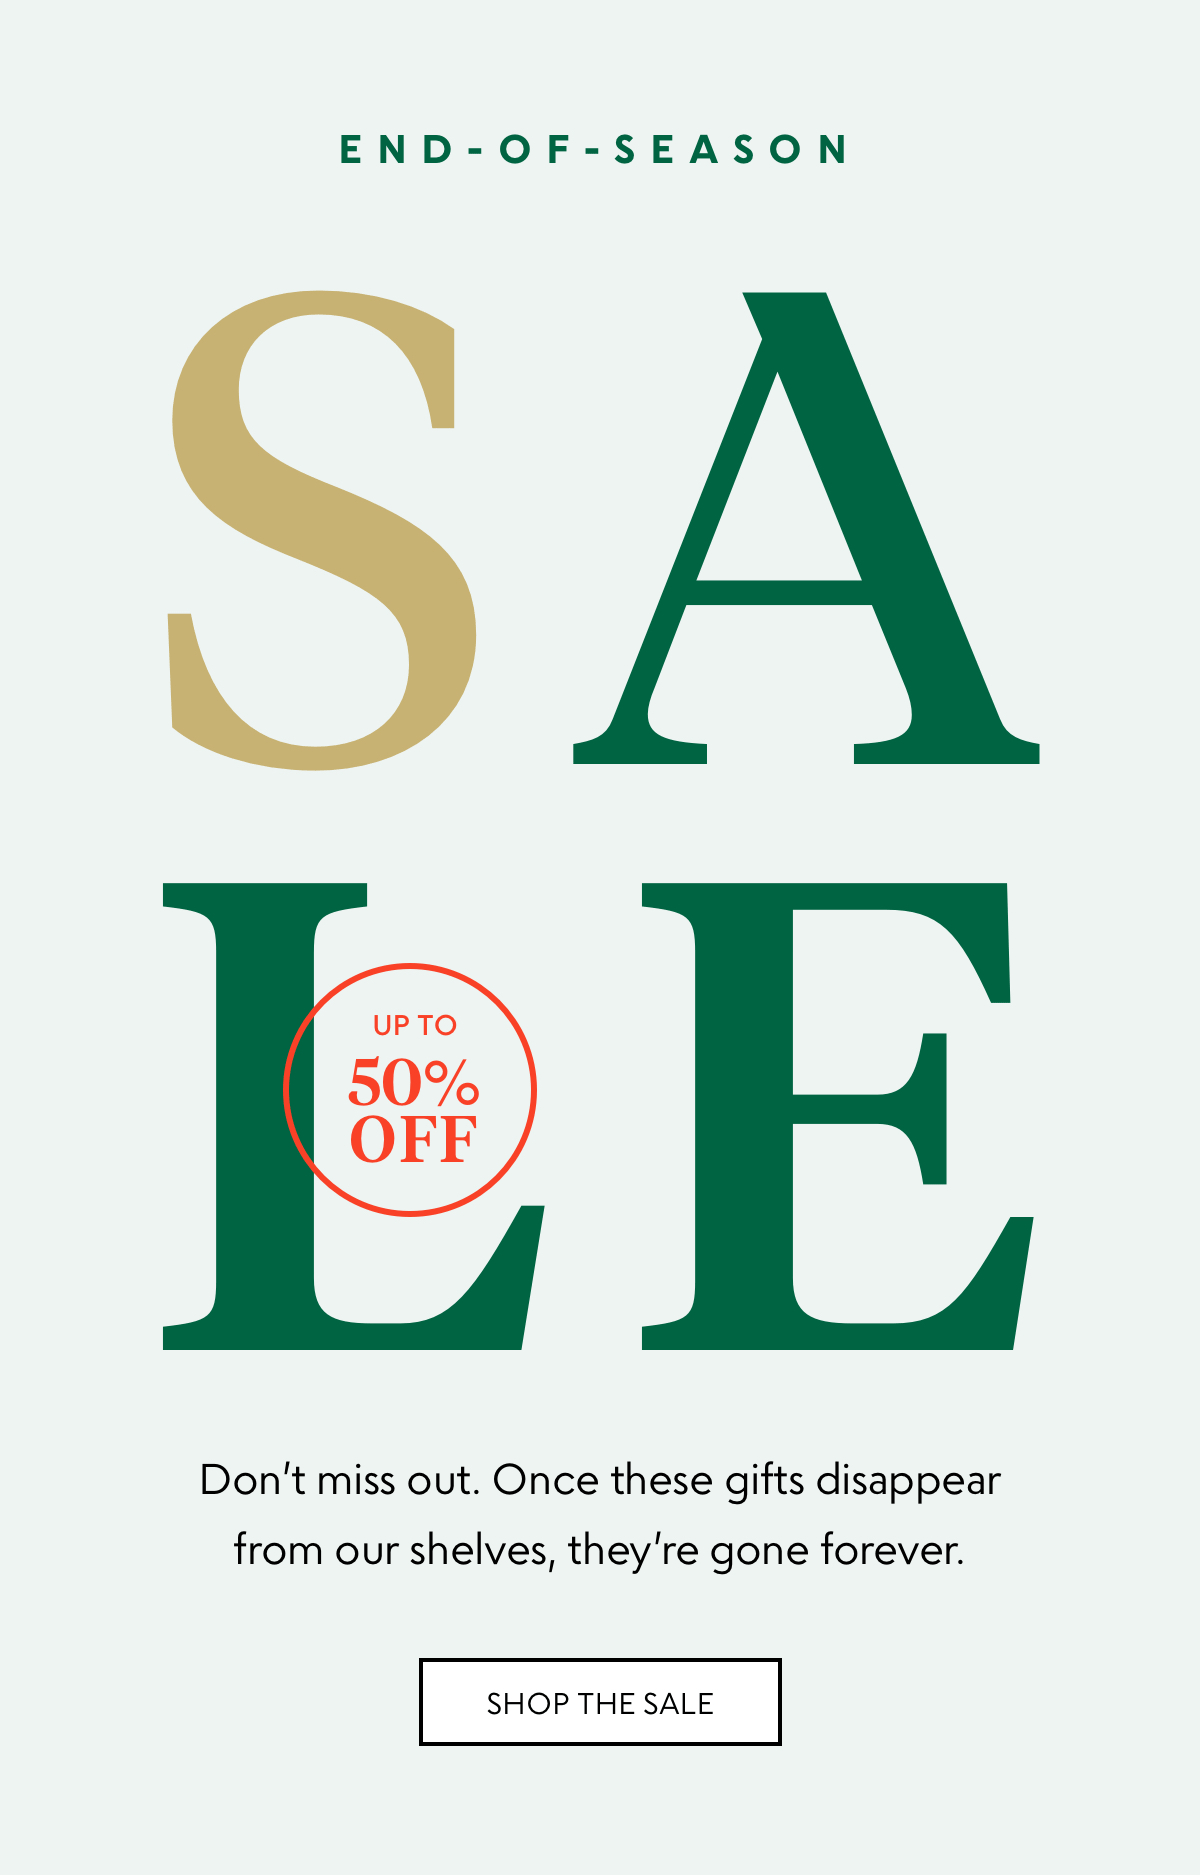 End-of-season sale